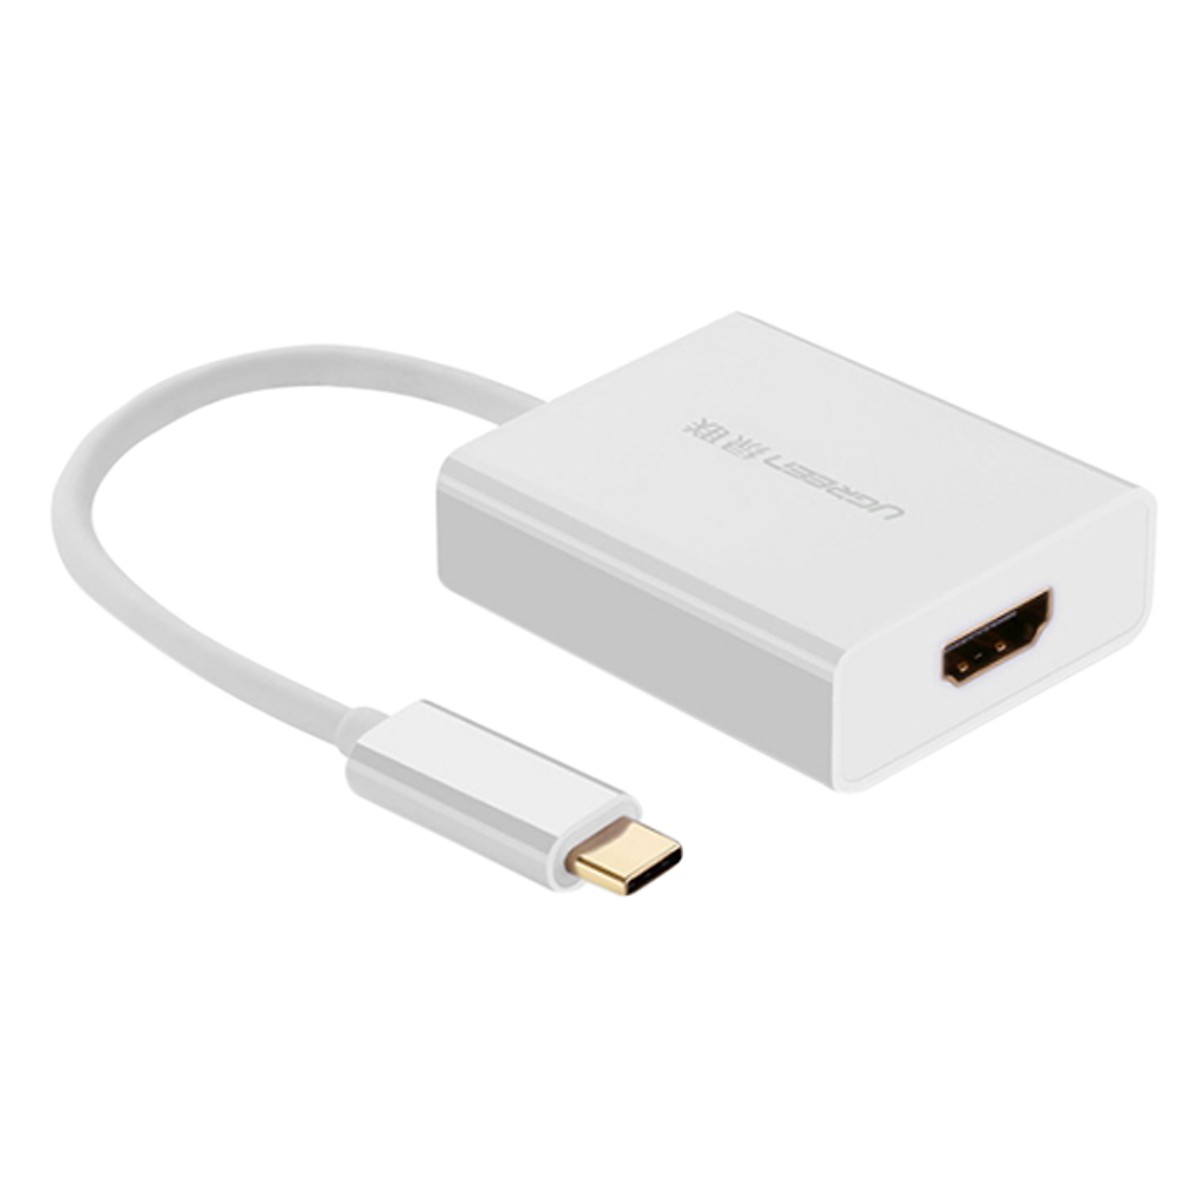 Cable (cáp) chuyển USB Type-C sang HDMI - Hiệu Ugreen - Mã 40273